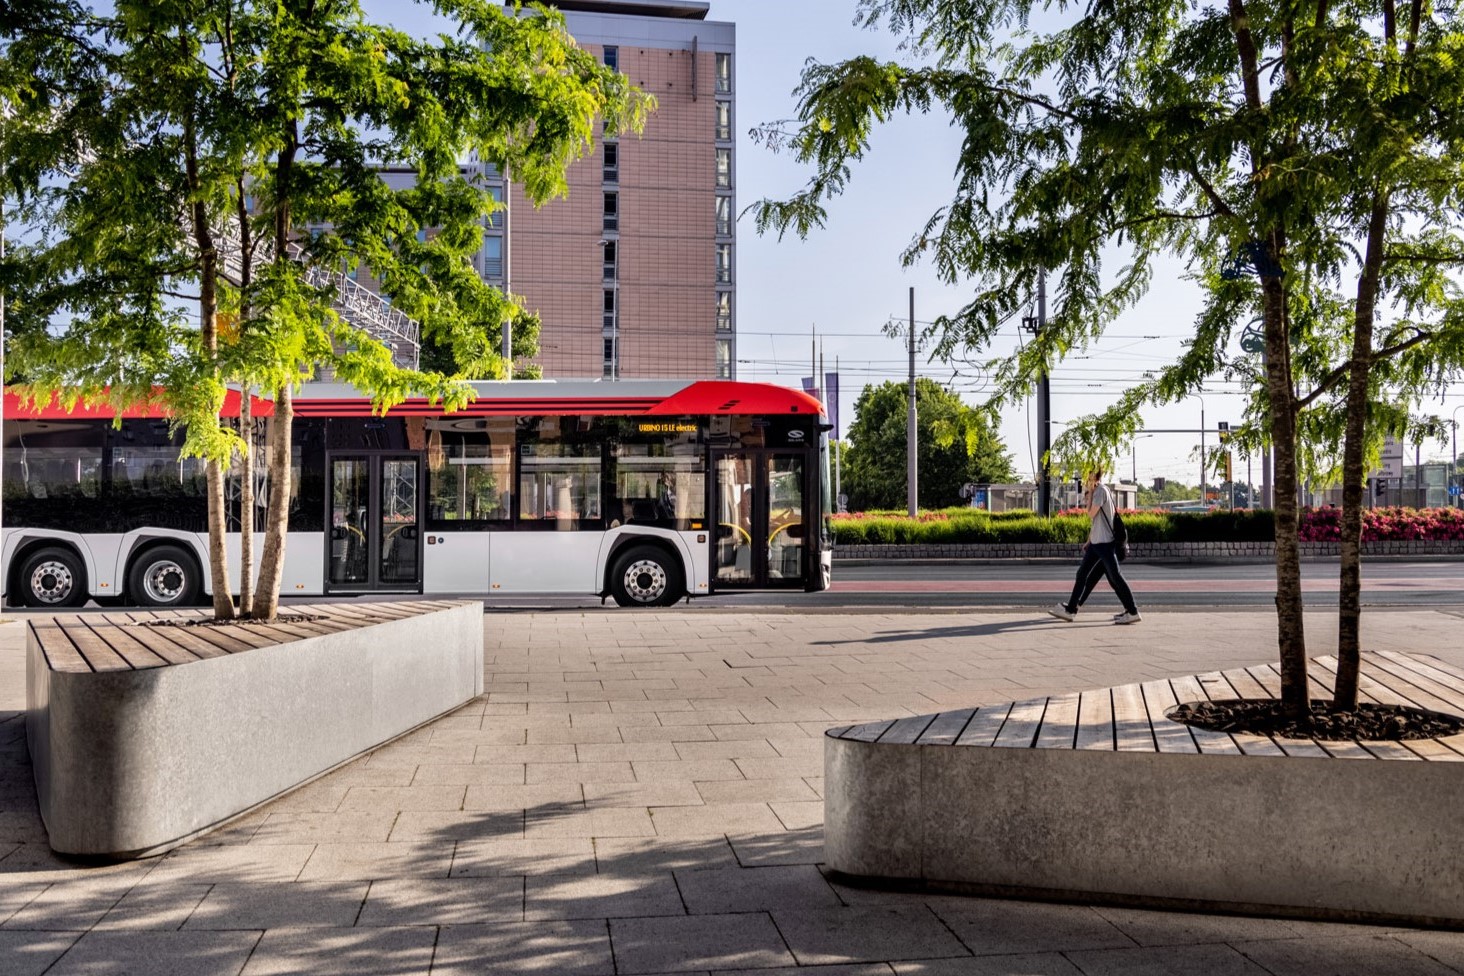 CAF suministrará autobuses interurbanos eléctricos de Solaris a Suecia